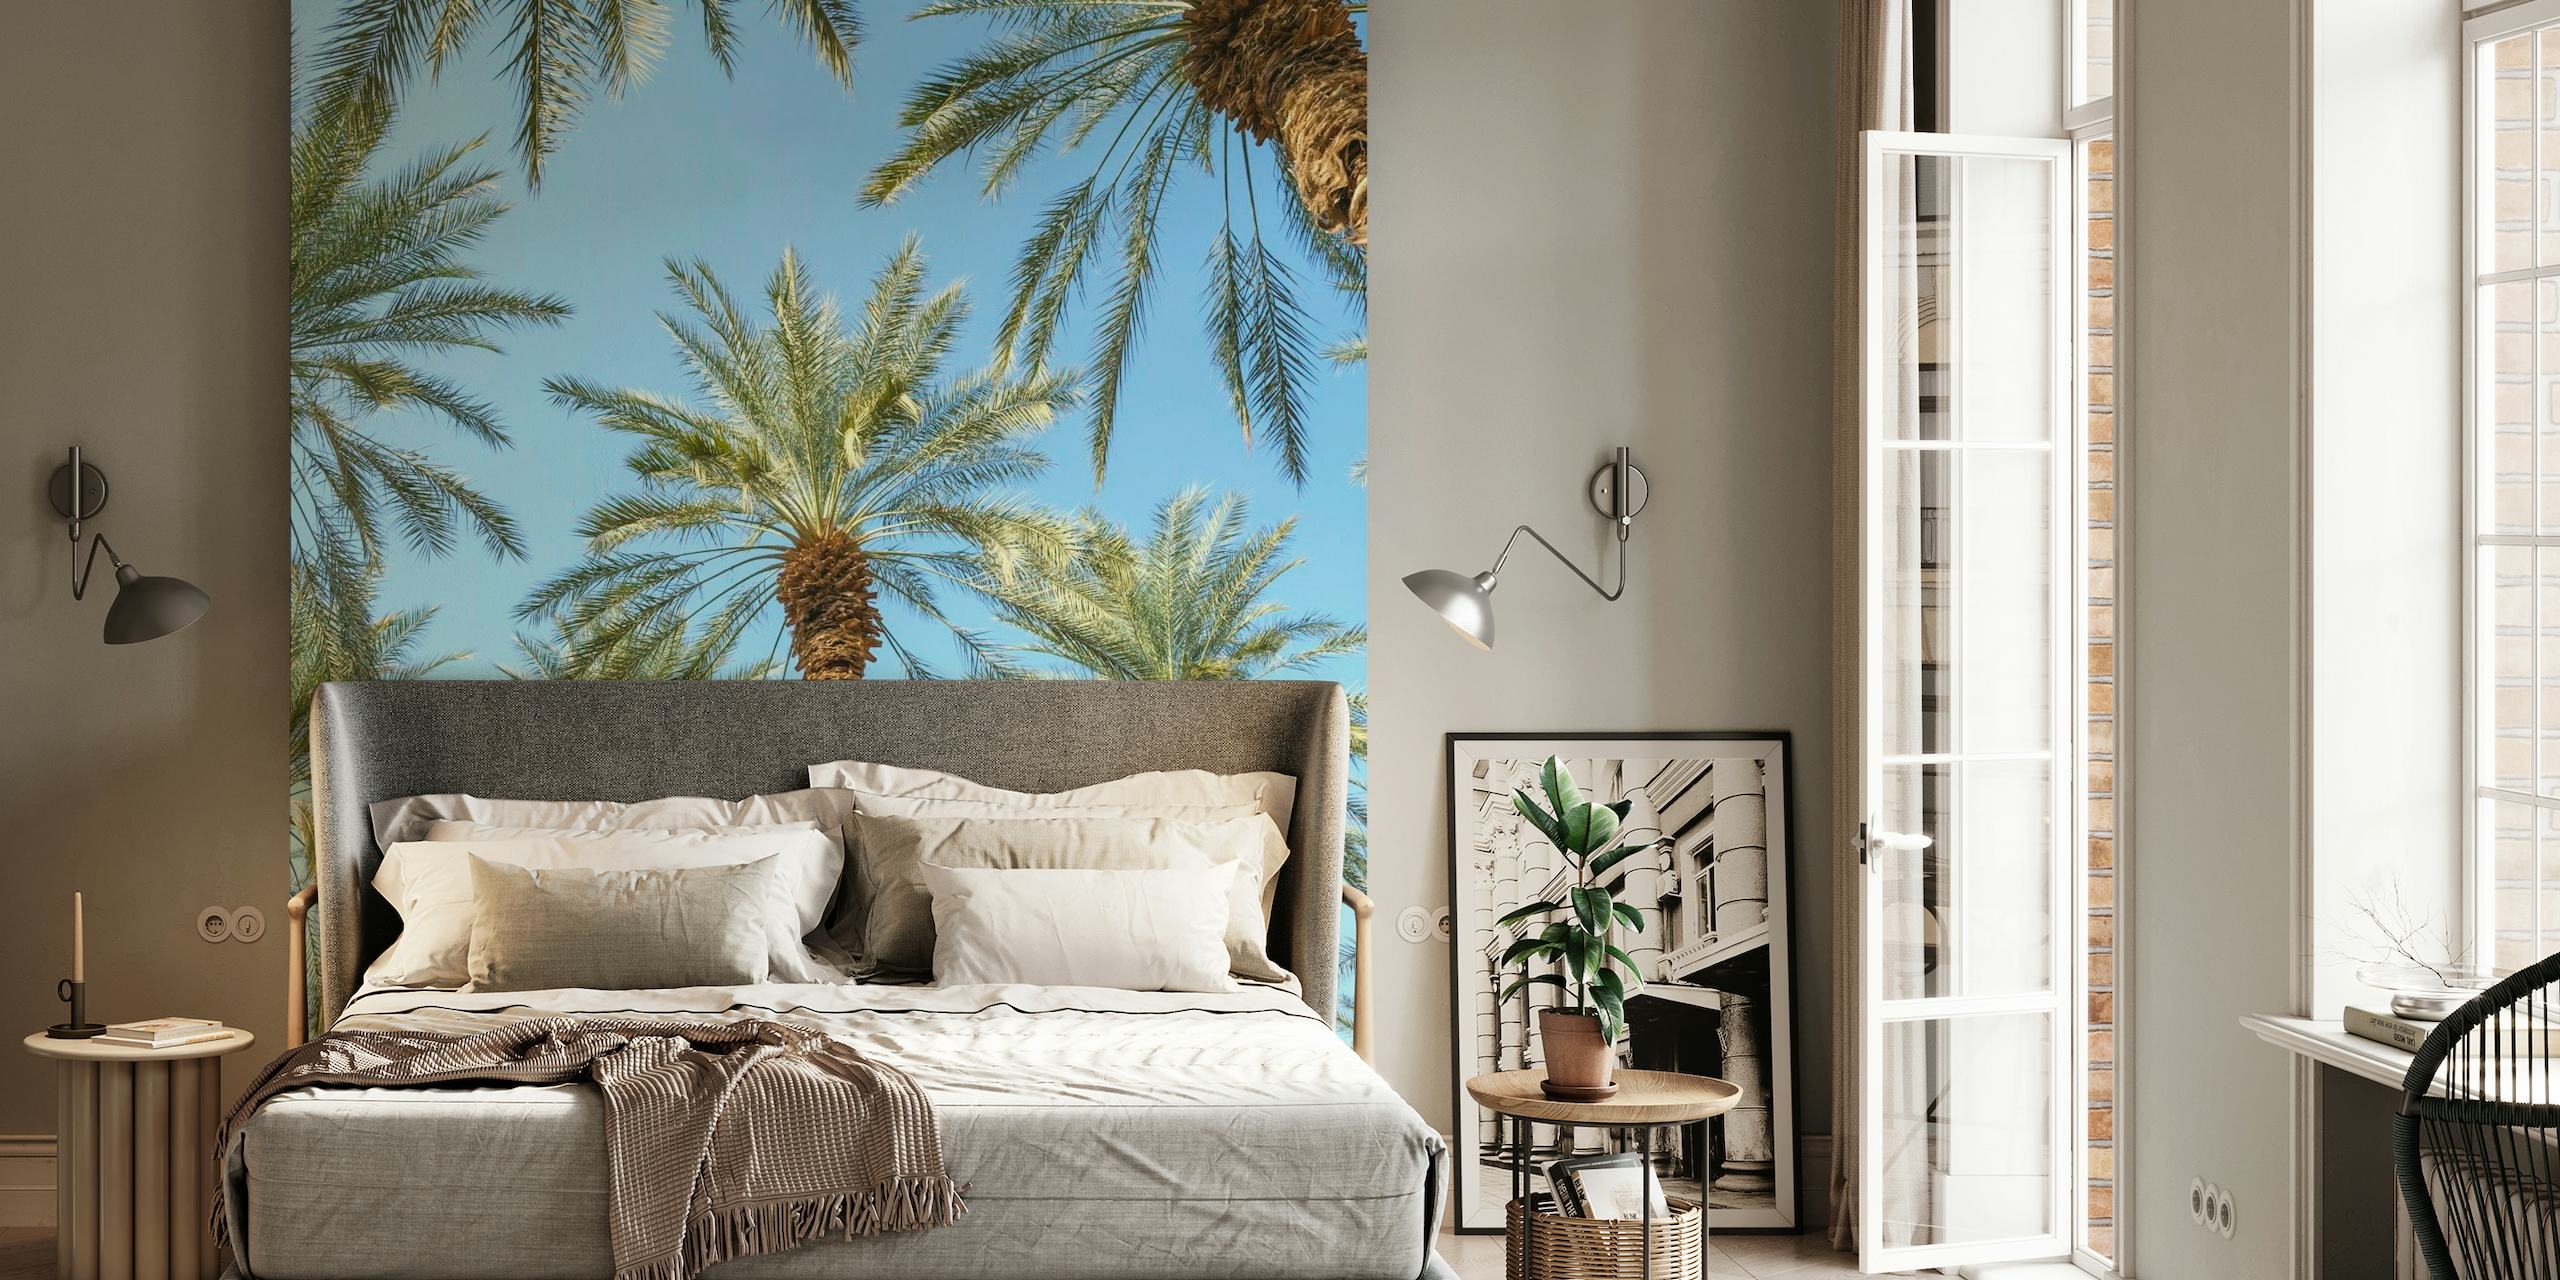 Fotomural de palmeras tropicales para un ambiente sereno de decoración del hogar.